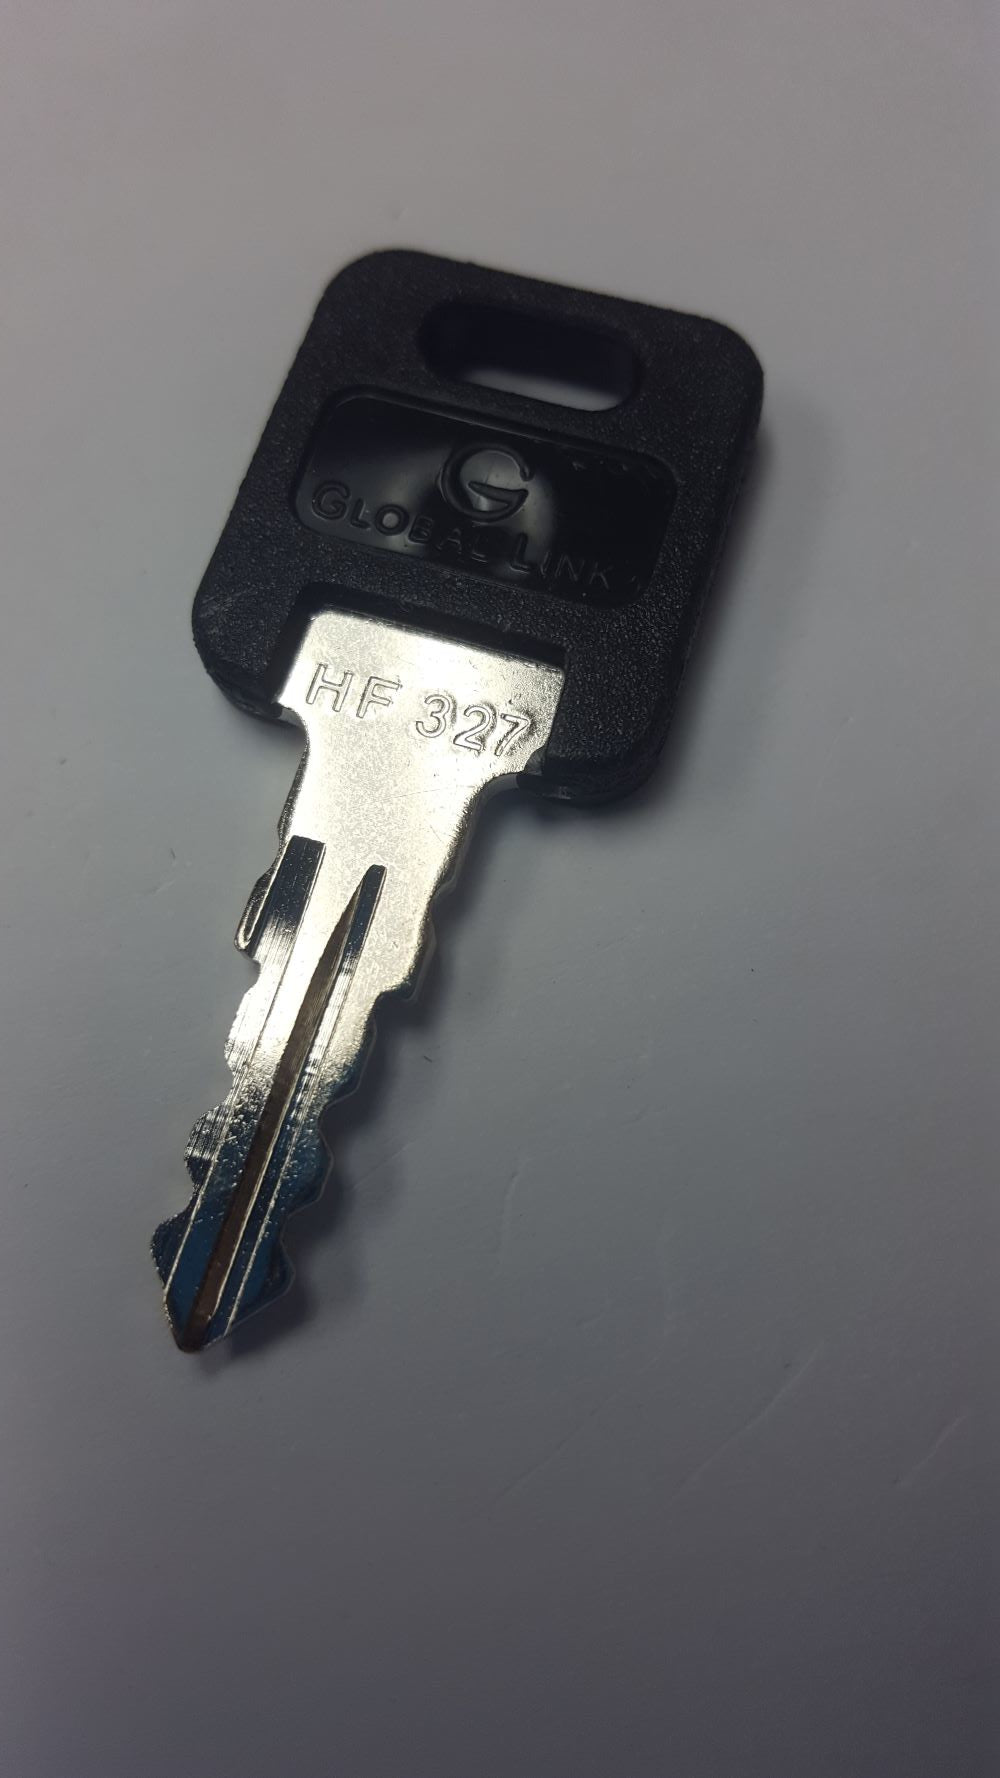 CPG KEY-HF-327 Pre-cut Stamped FIC Replacemnt HF327 Key